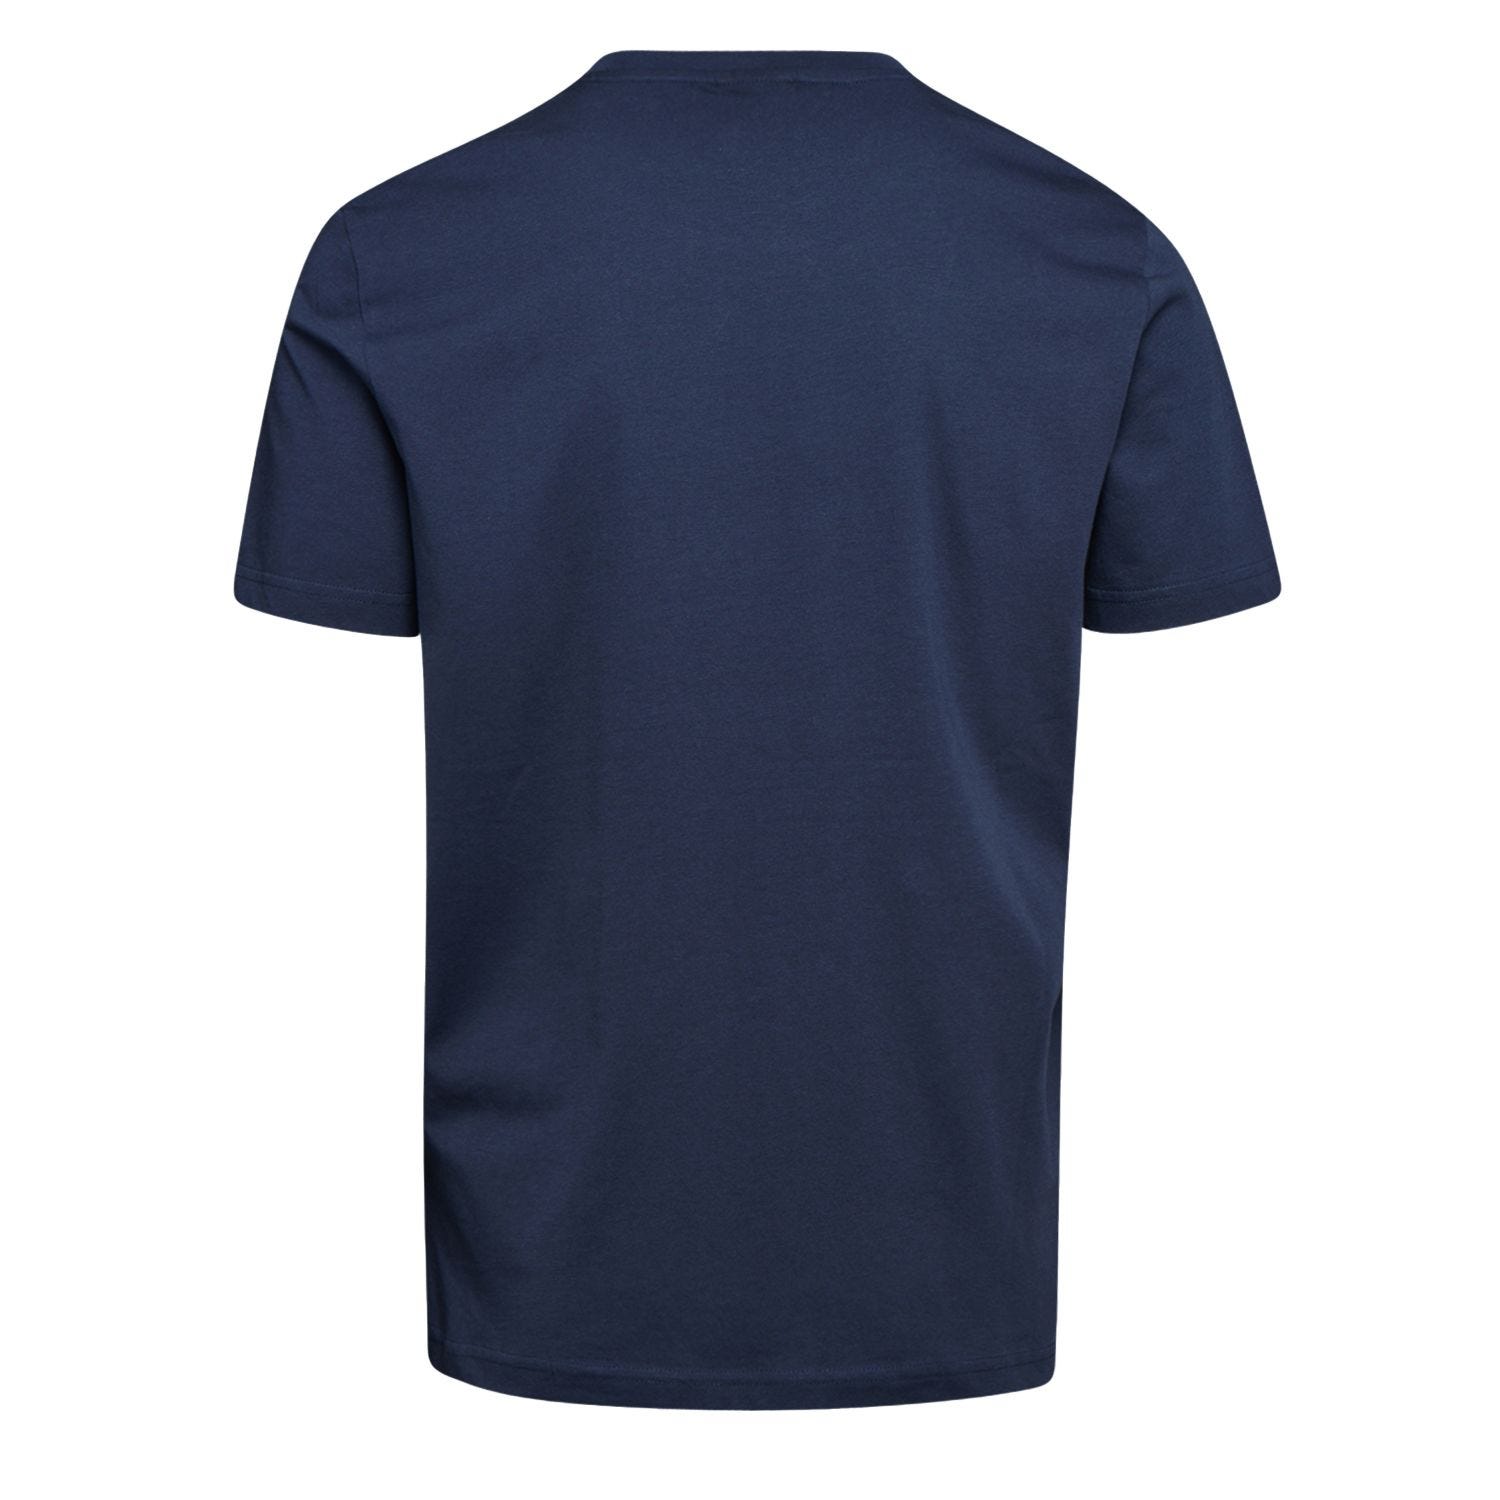 Tee-shirt de travail GRAPHIC ORGANIC à manches courtes bleu marine TS - DIADORA SPA - 702.176914 2